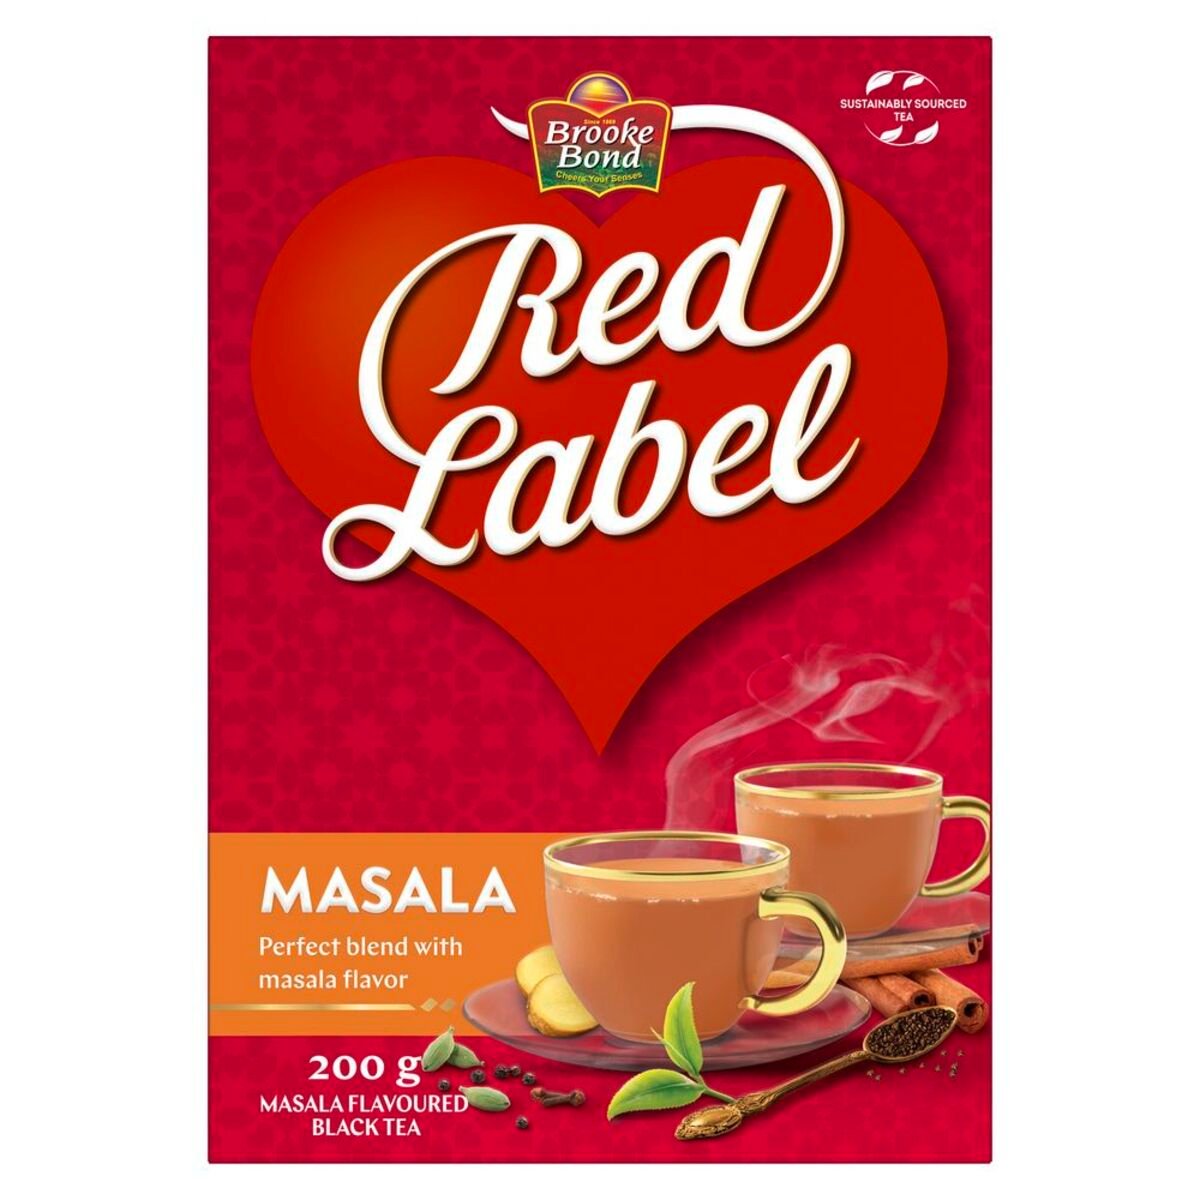 بروكي بوند شاي احمر  العلامه الحمراء بنكهة المسالا ٢٠٠ جم